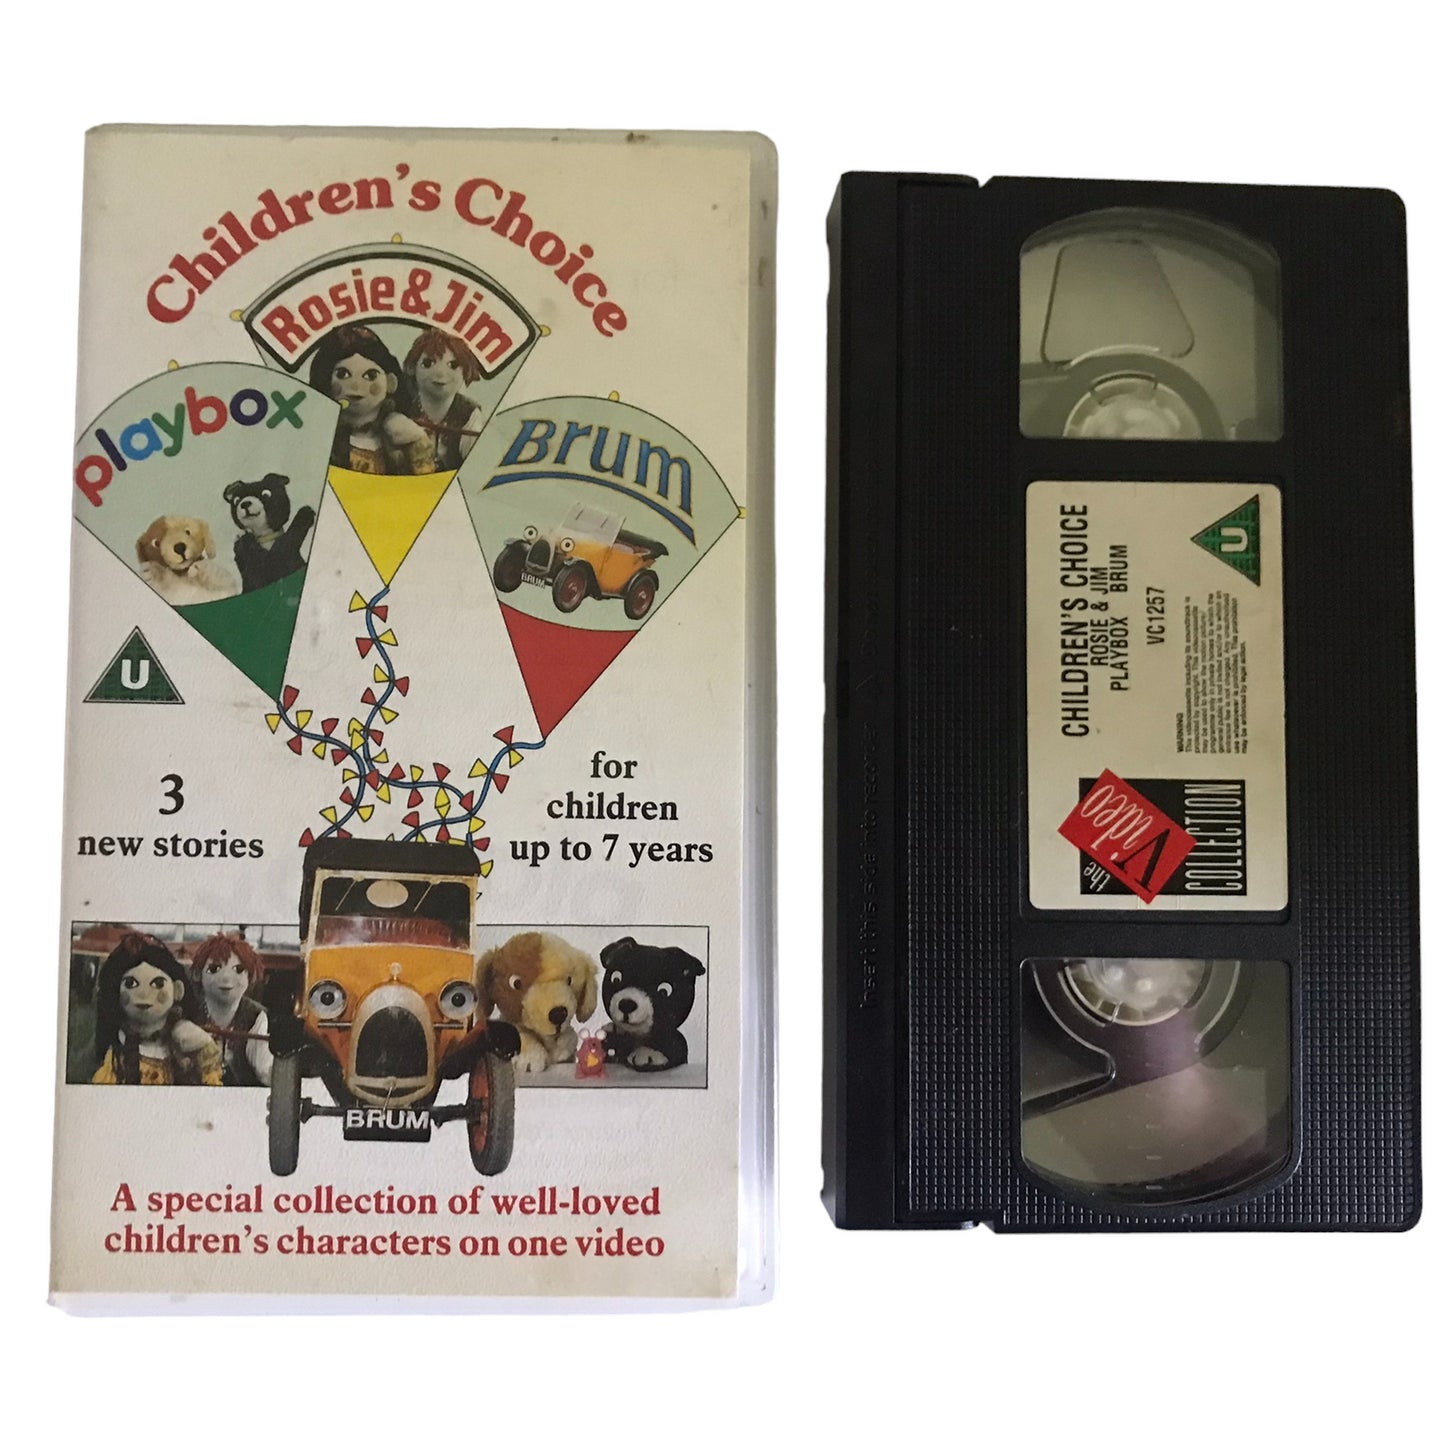 Children's Choice Rosie & Jim Playbox Brum - VCI - VC1257 - Kids - Pal - VHS-